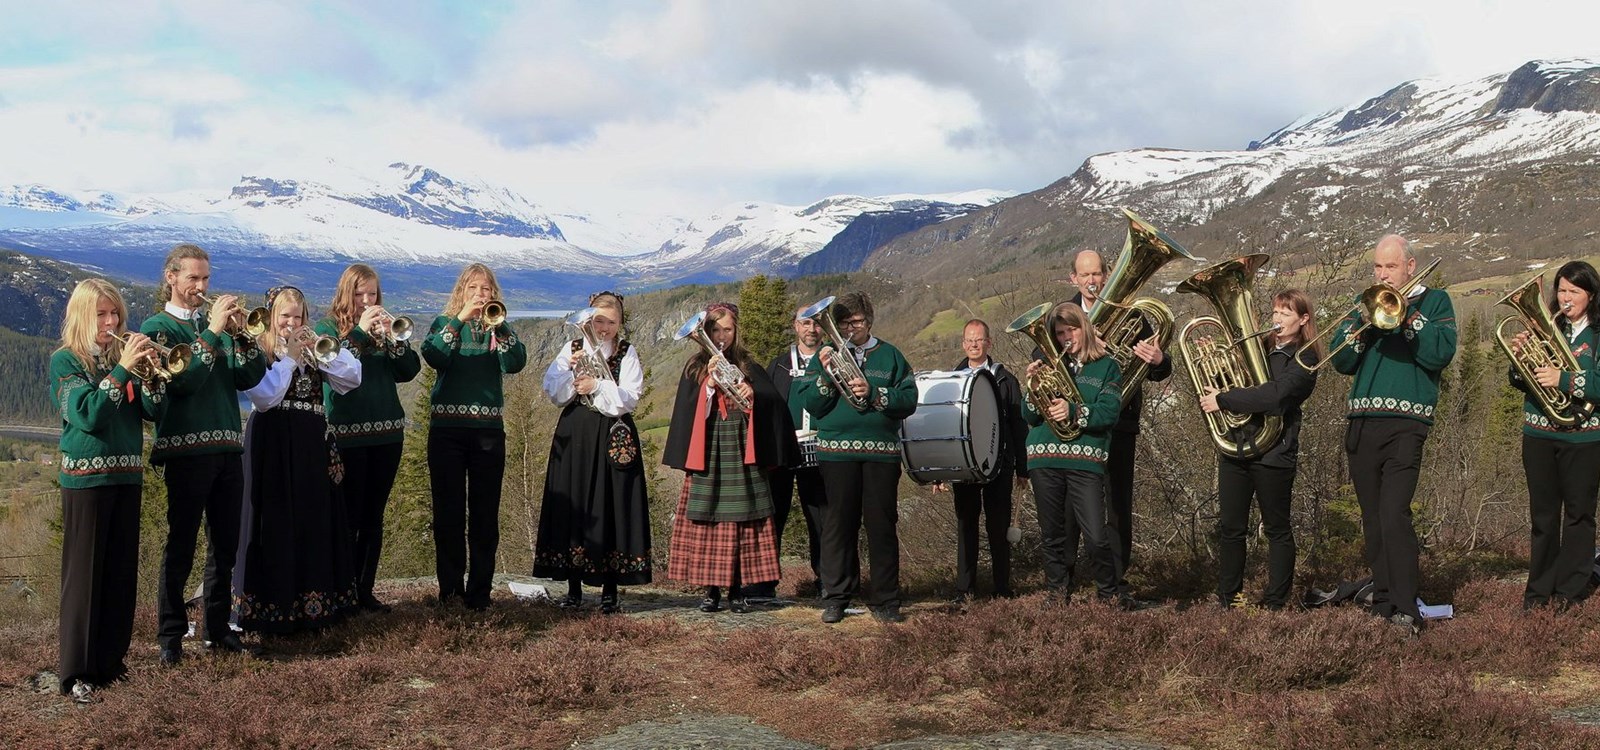 Fjellblom musikklag i lag med Vang skule- og ungdomskorps er vertskap for det som kan krype og gå av korps i Valdres denne helga.